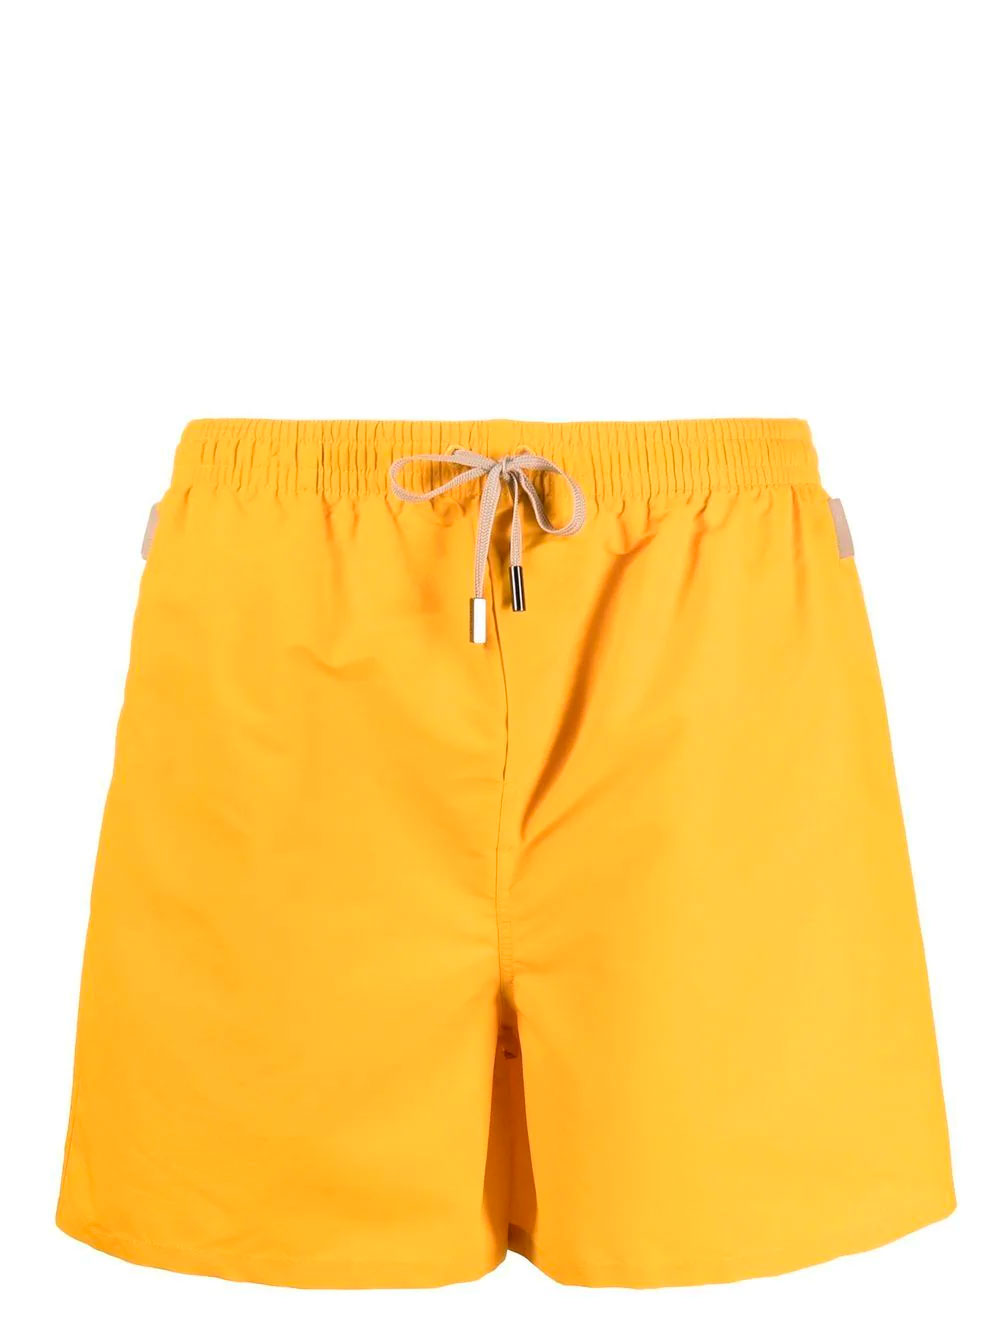 Praia swim shorts